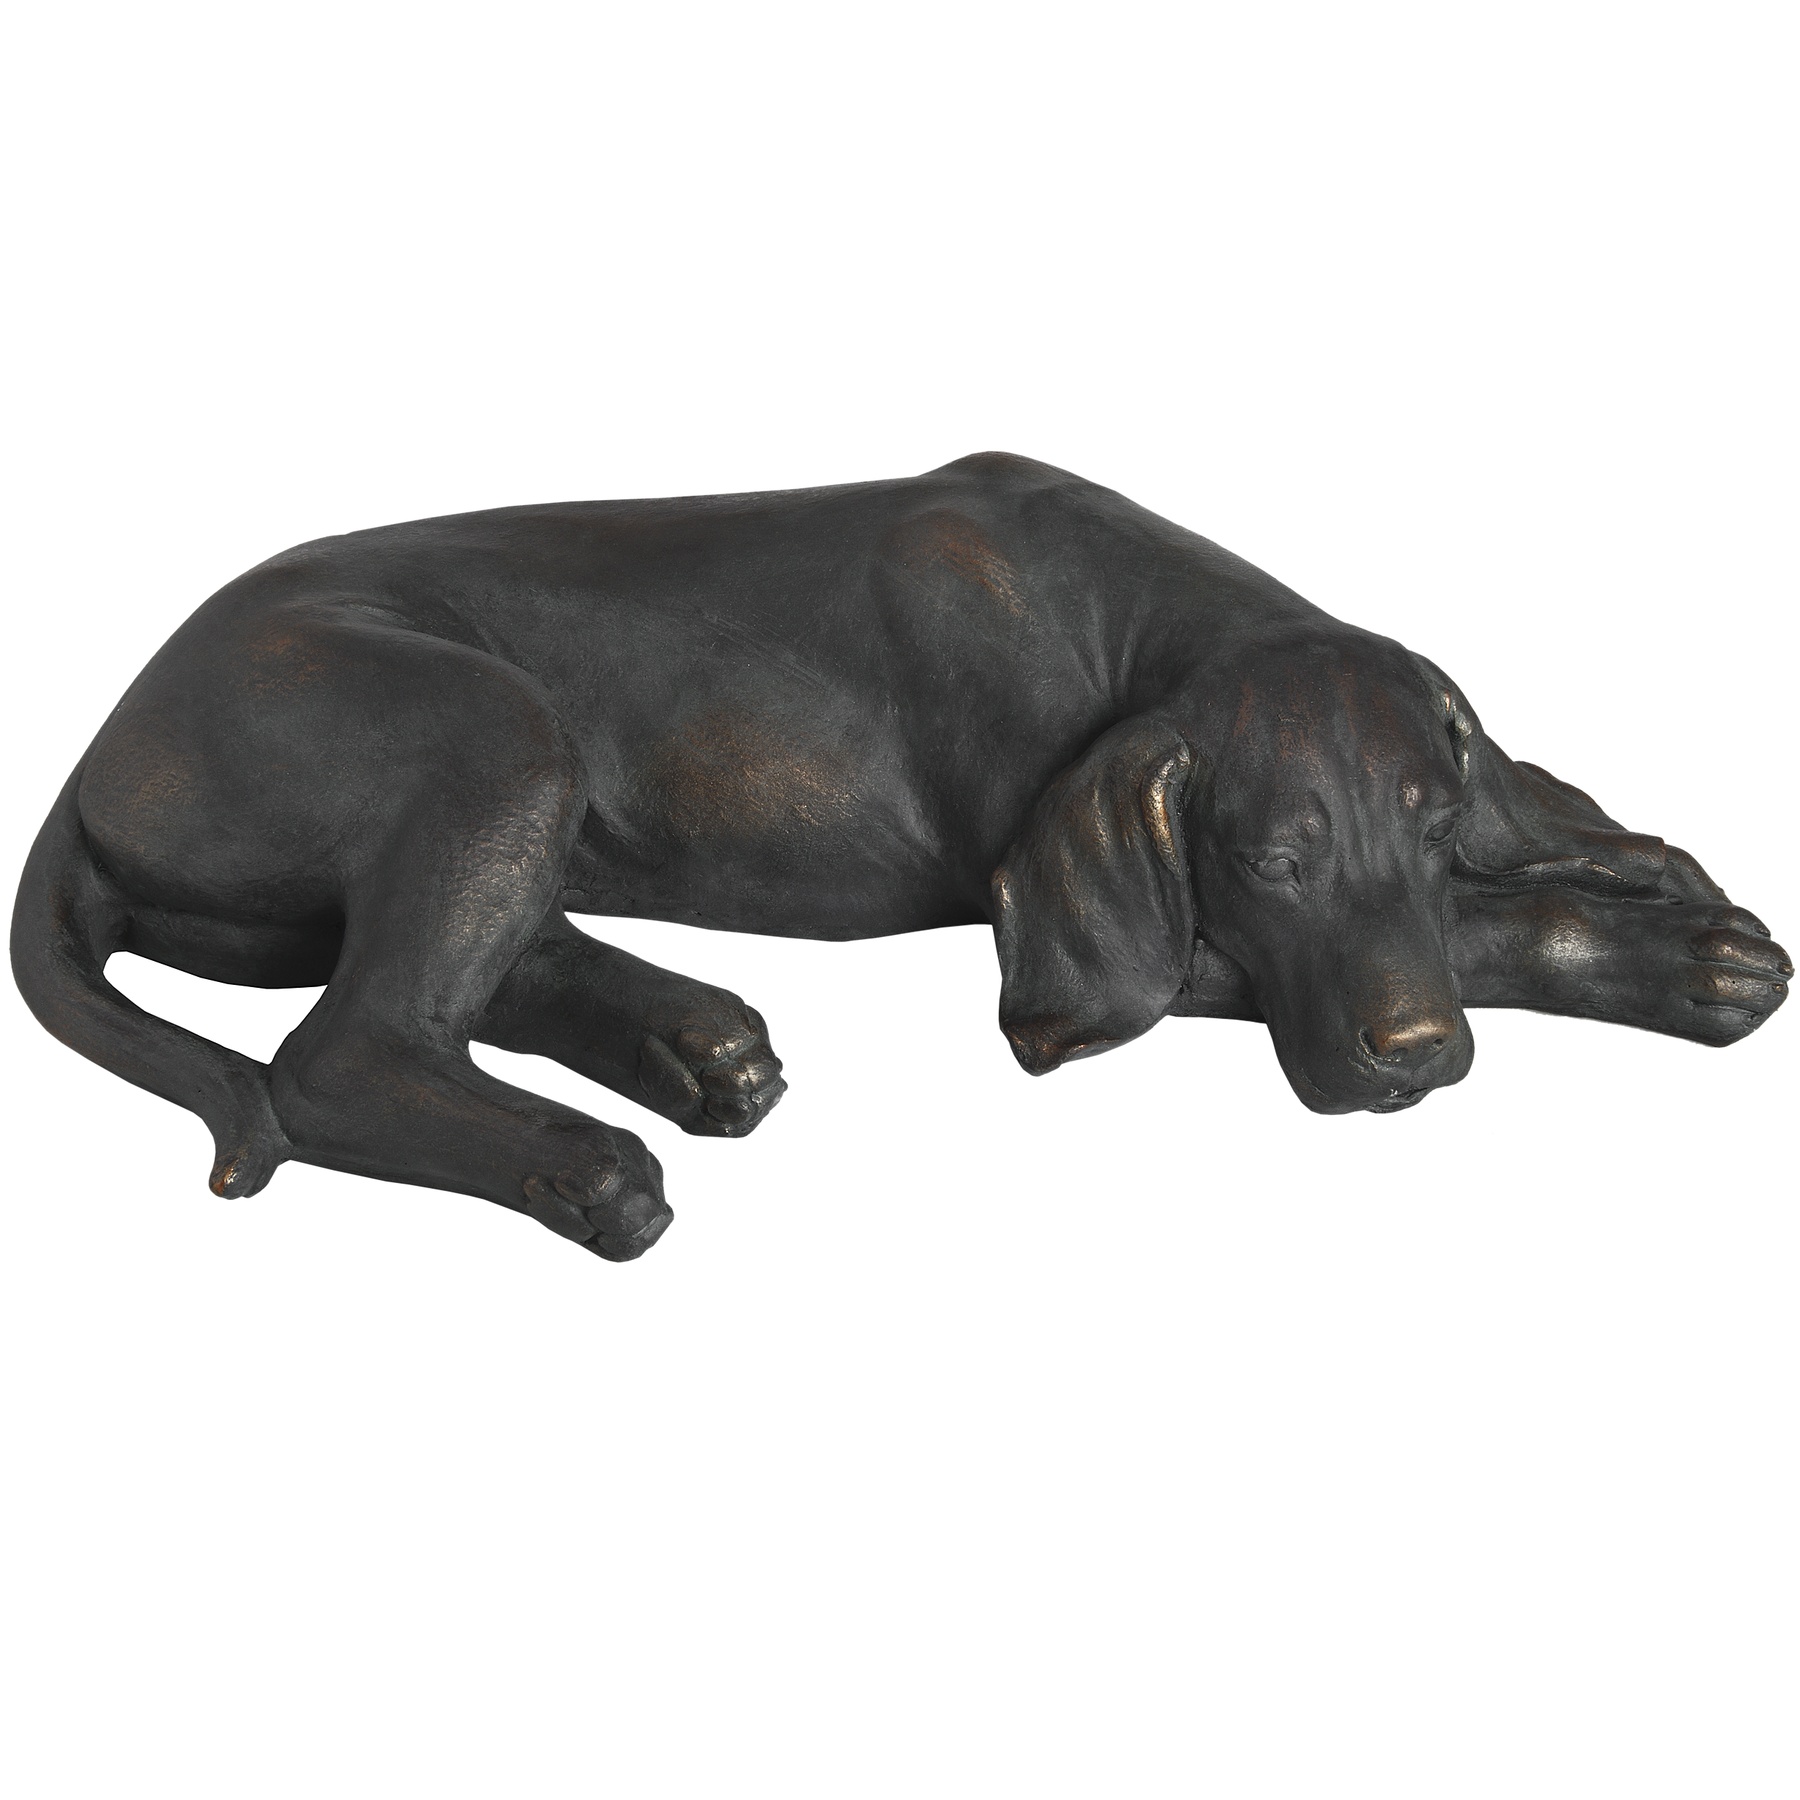 Lazy Spaniel Lying Dog Statue - Image 1